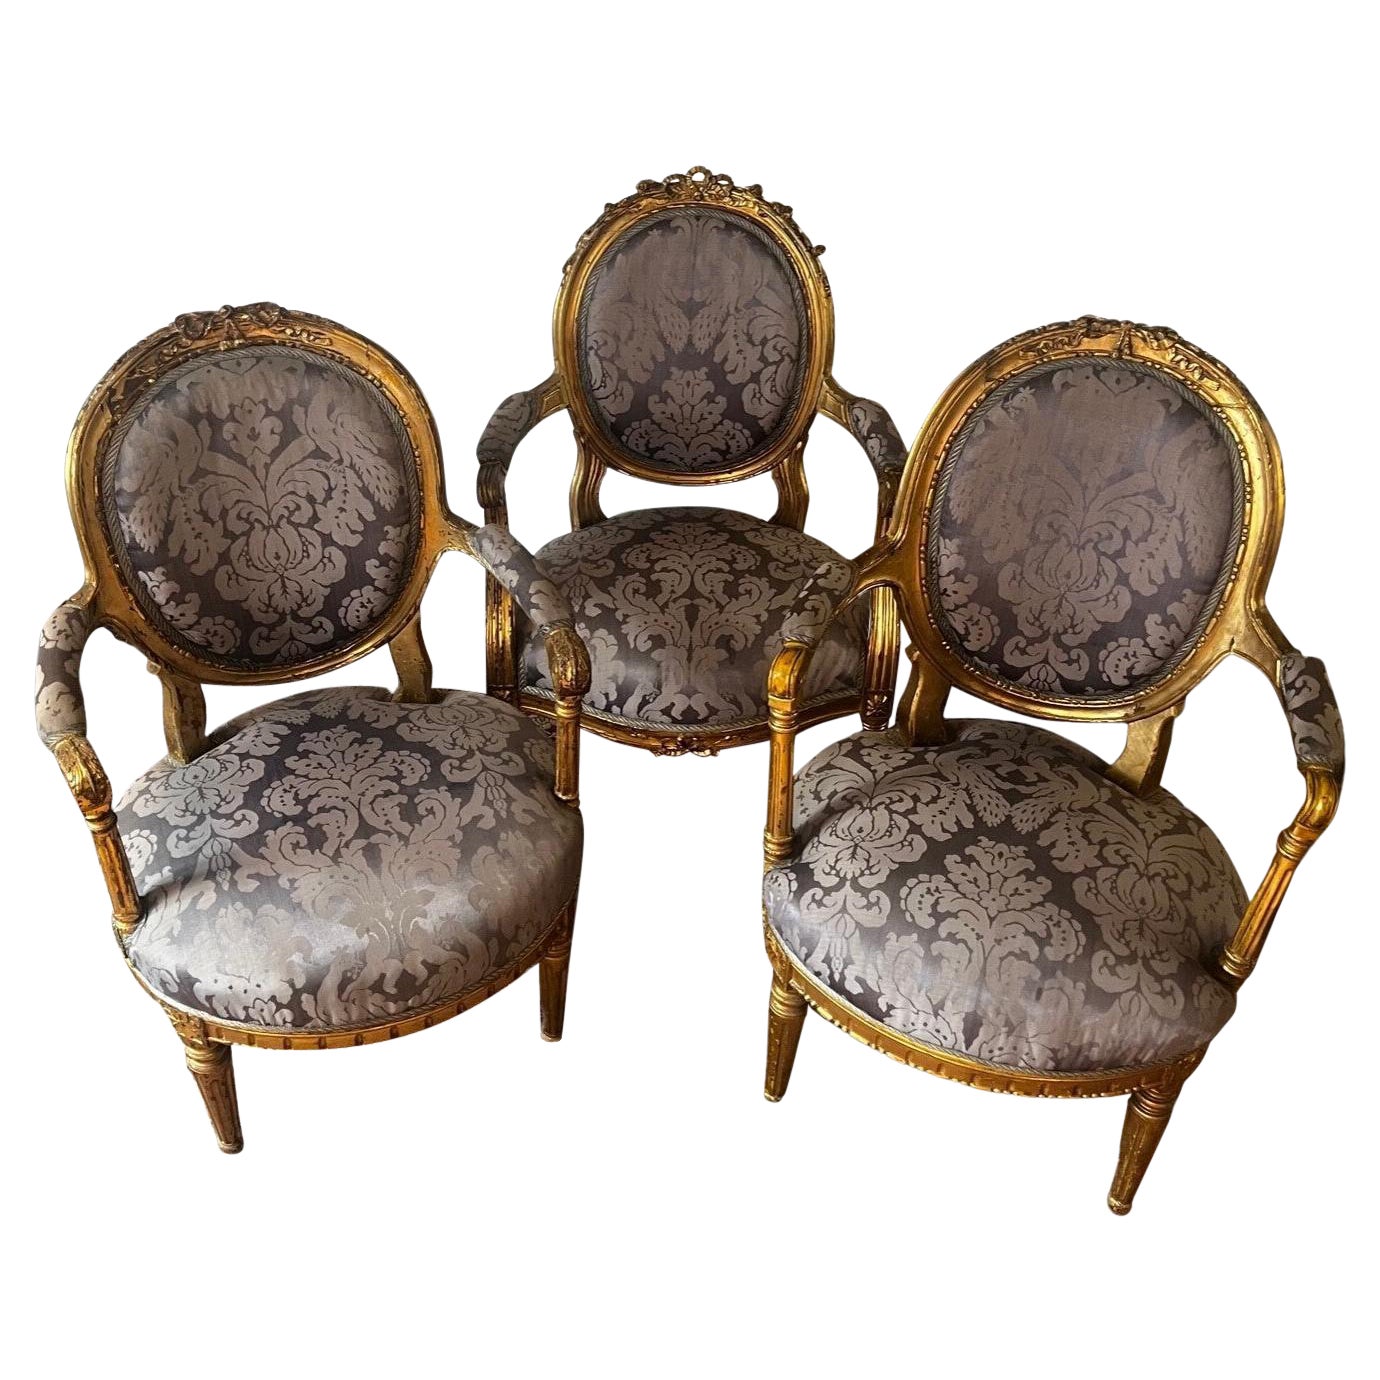 Ensemble de trois fauteuils d'origine Louis XVI du 18ème siècle dorés à l'or